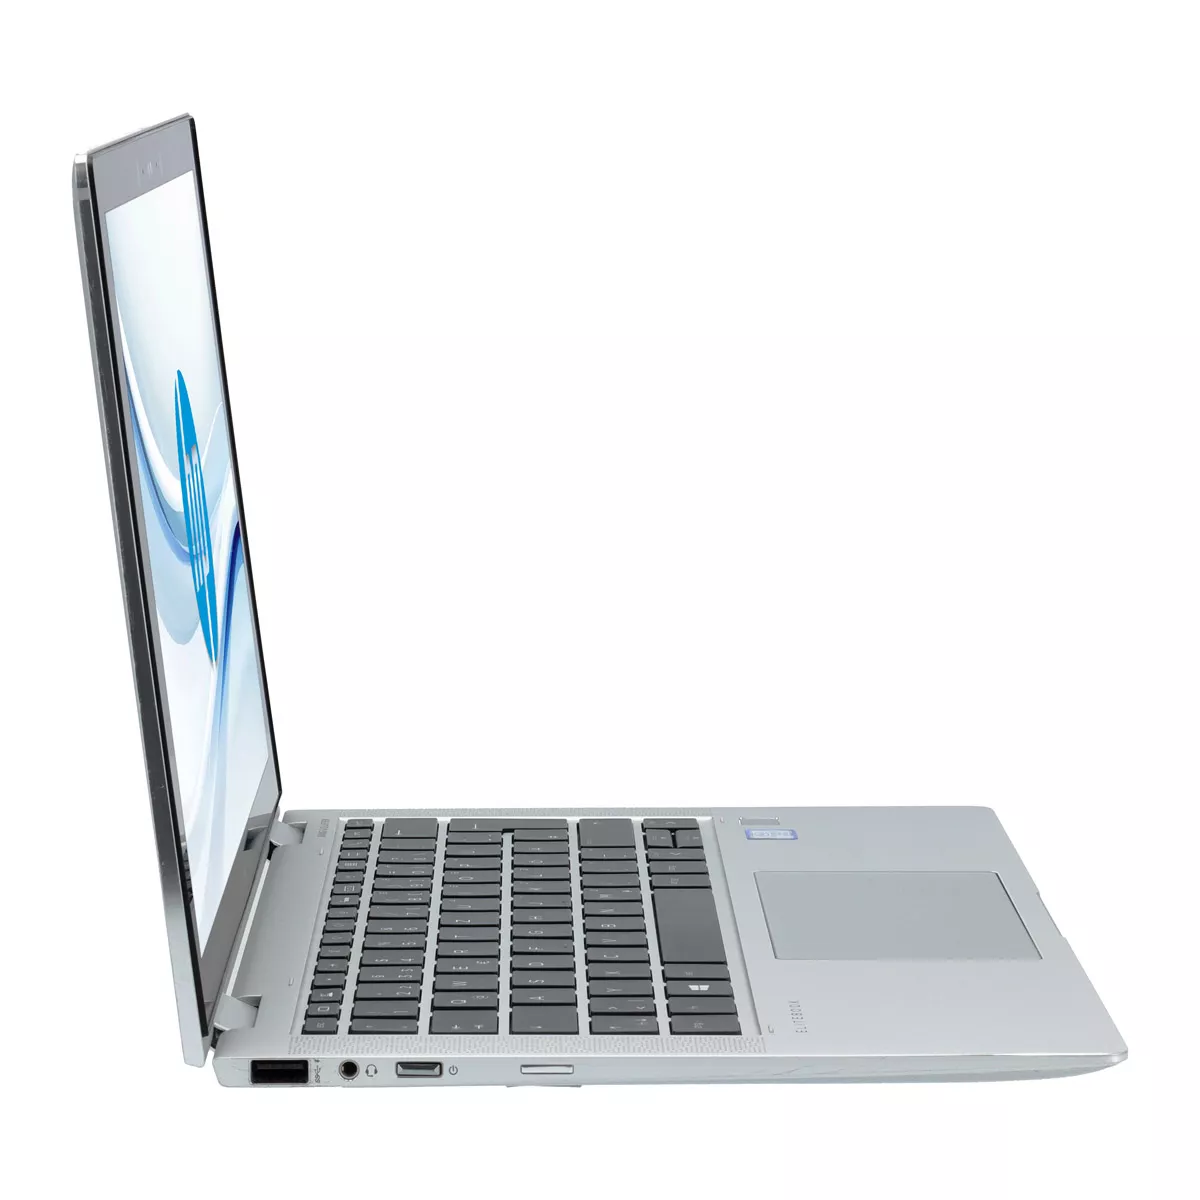 HP EliteBook x360 1030 G4 Core i5 8365U Full-HD Touch 16 GB 240 GB M.2 nVME SSD Webcam A+